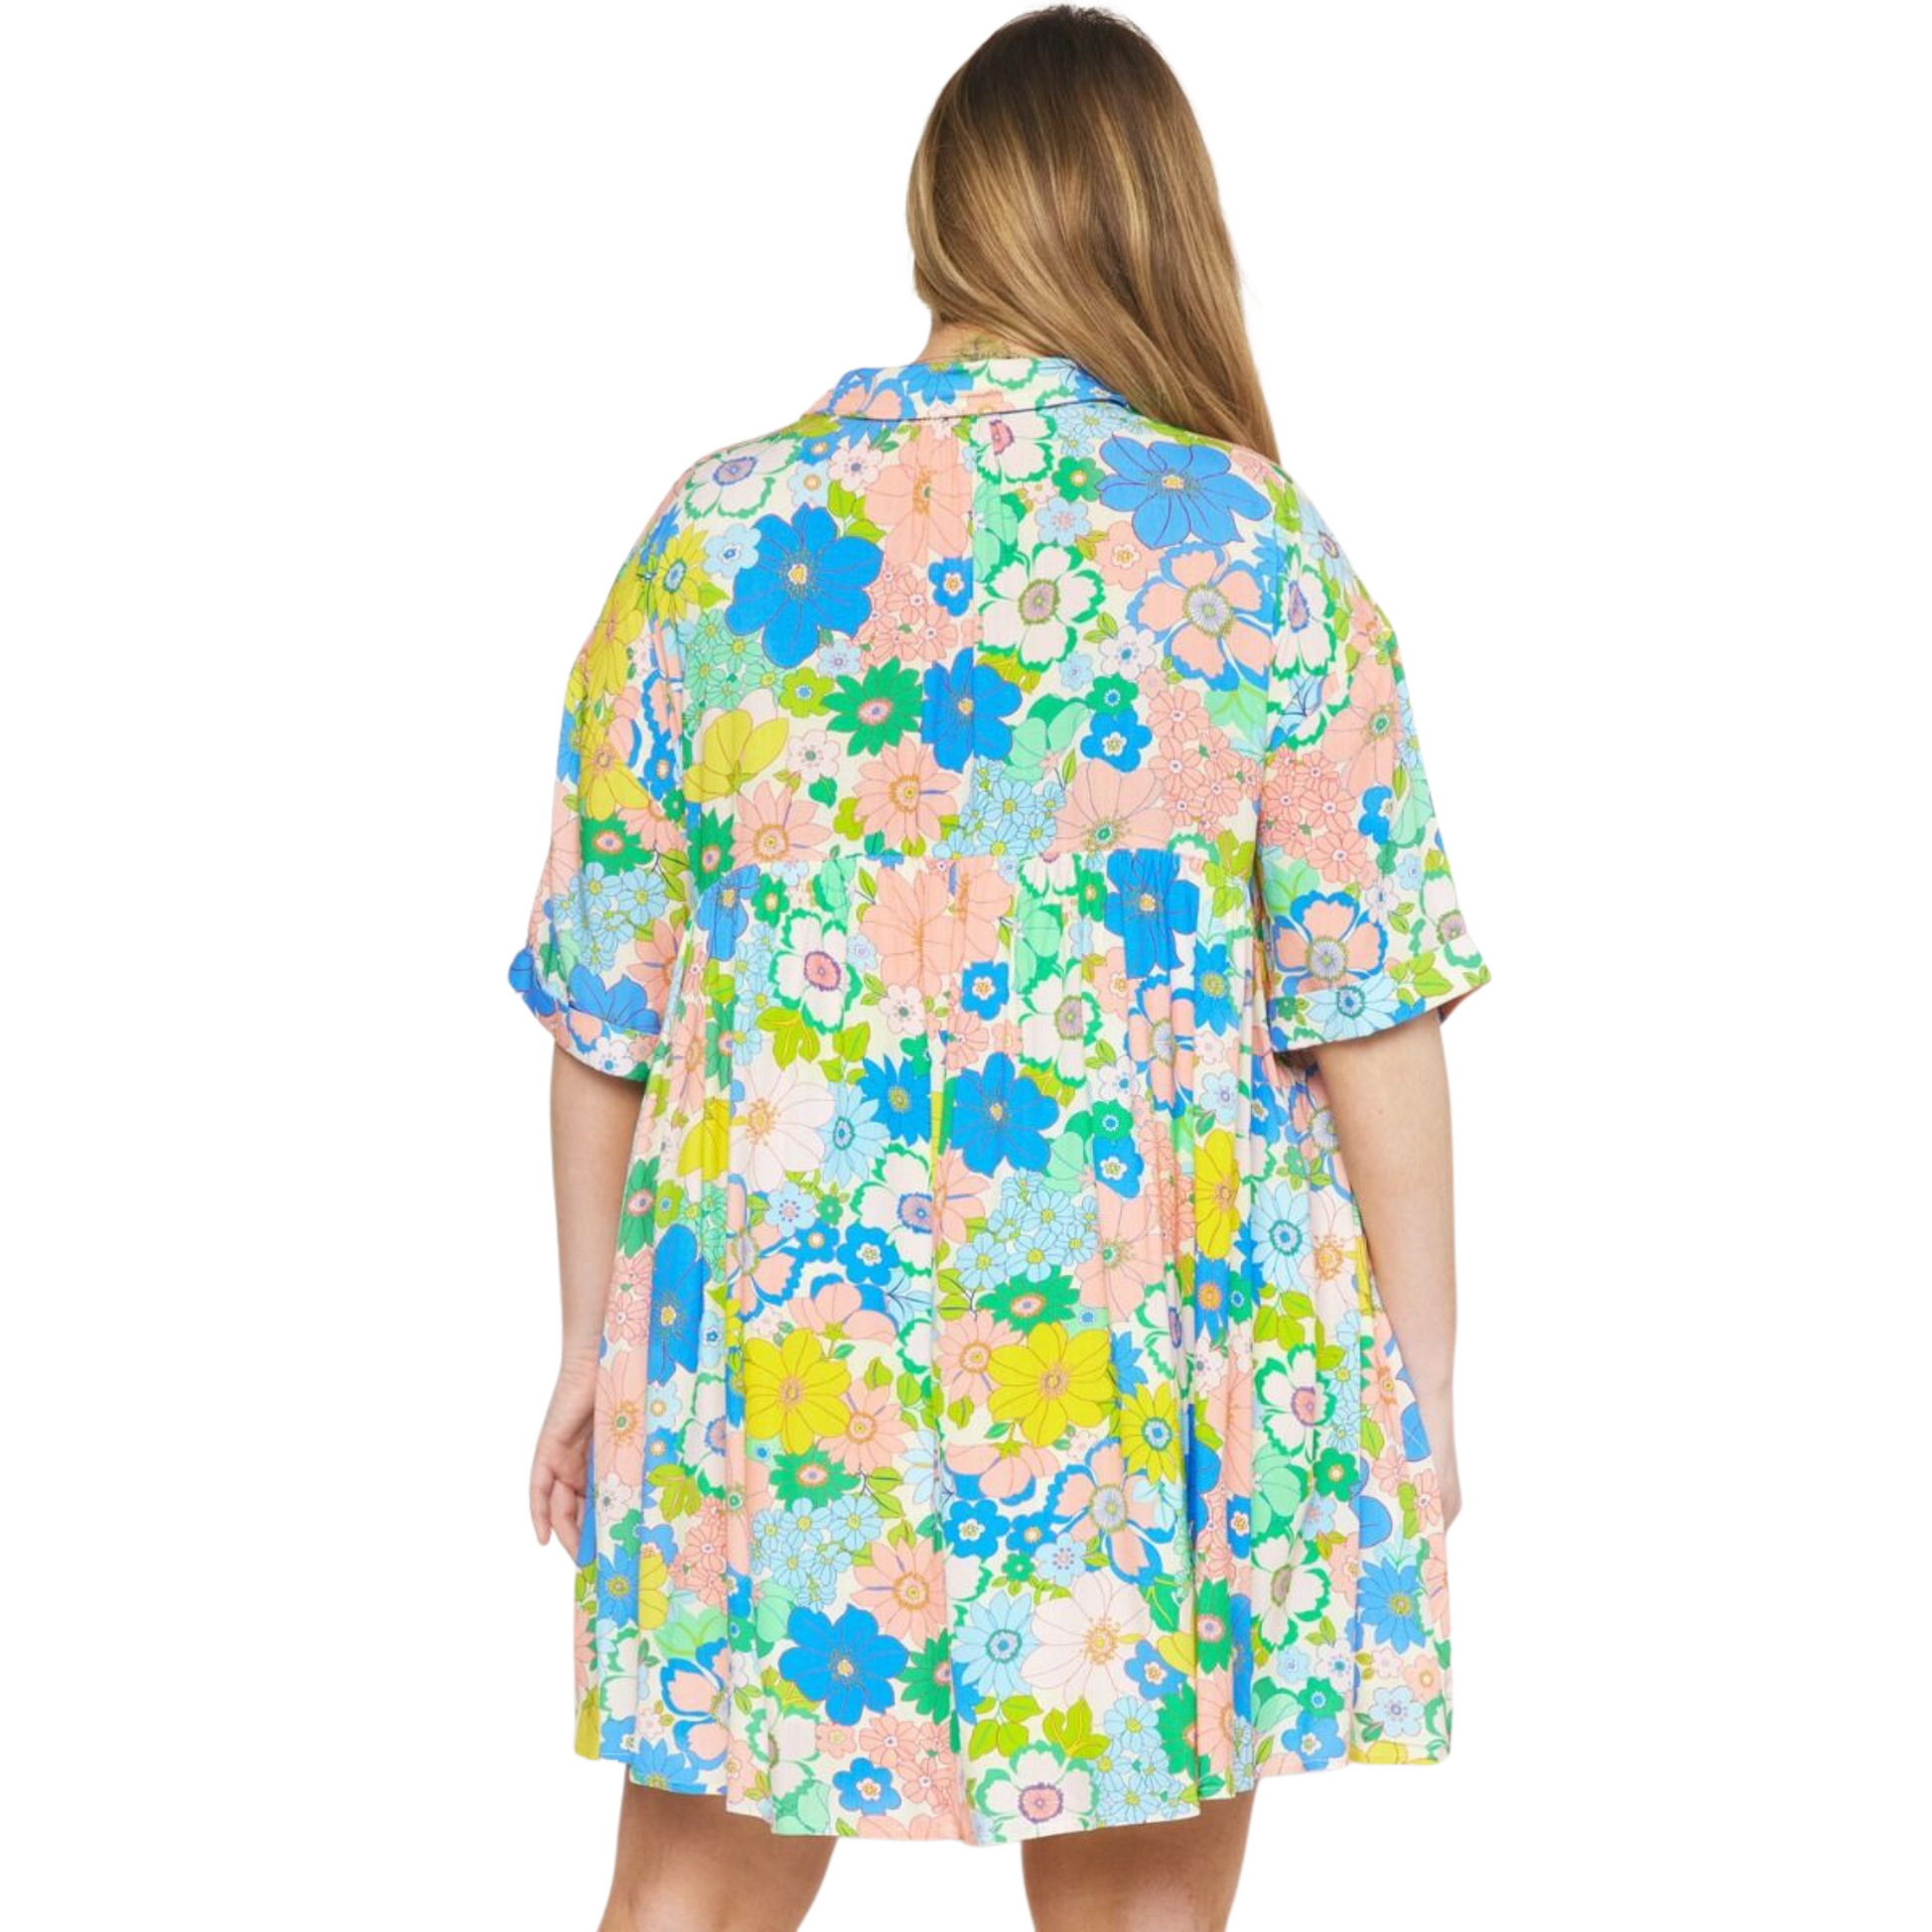 plus size floral button up mini dress. Features vivid colors